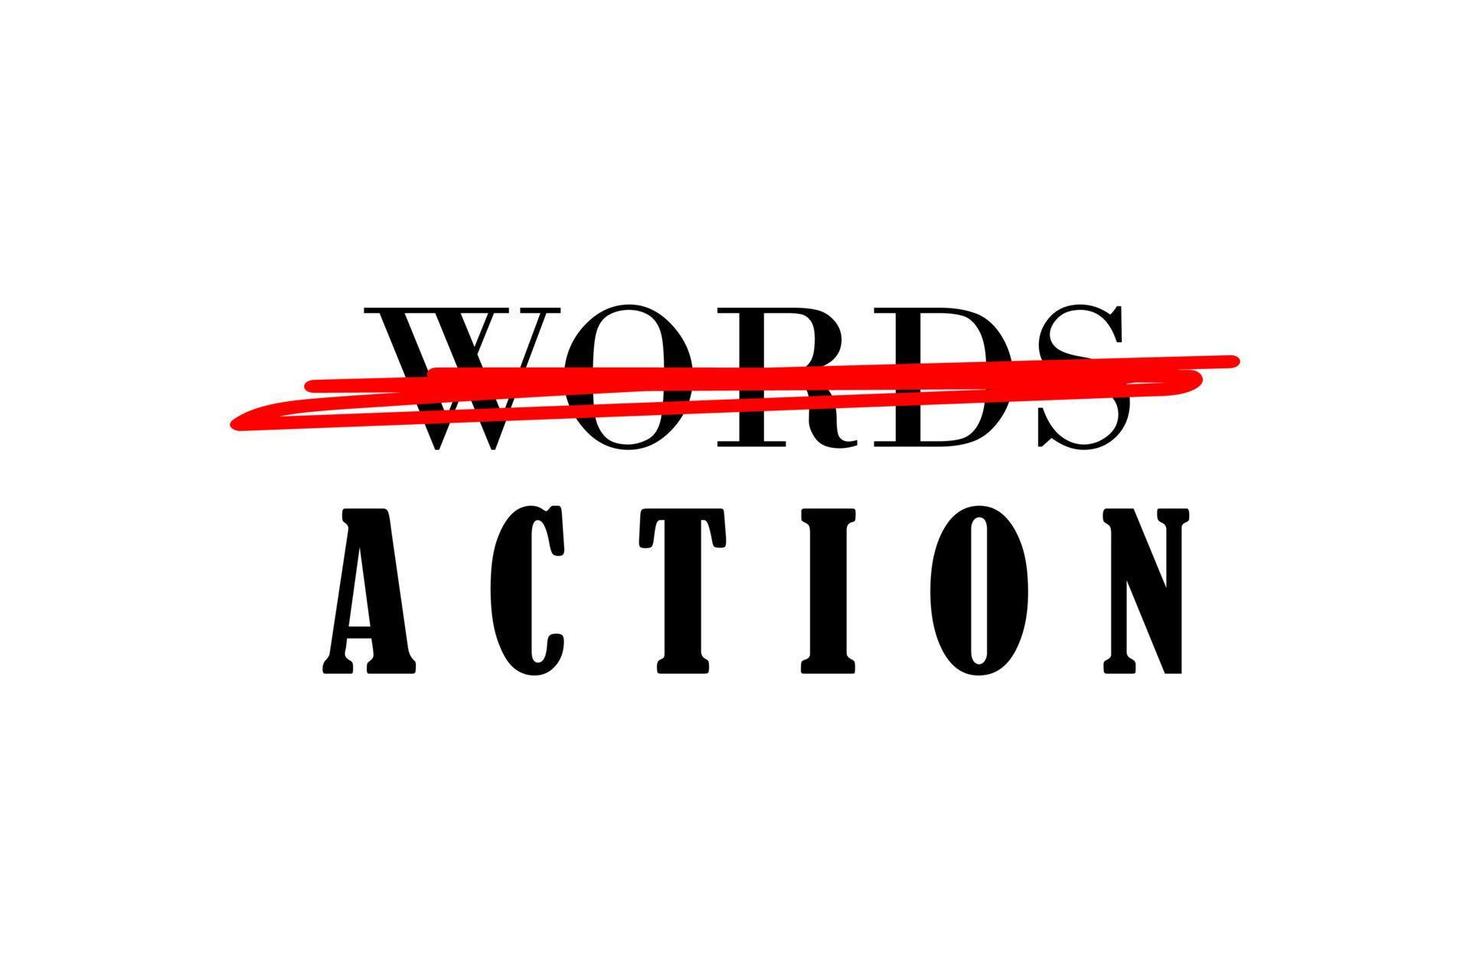 no palabras pero acción motivacional cita, camiseta impresión modelo. mano dibujado letras frase. vector